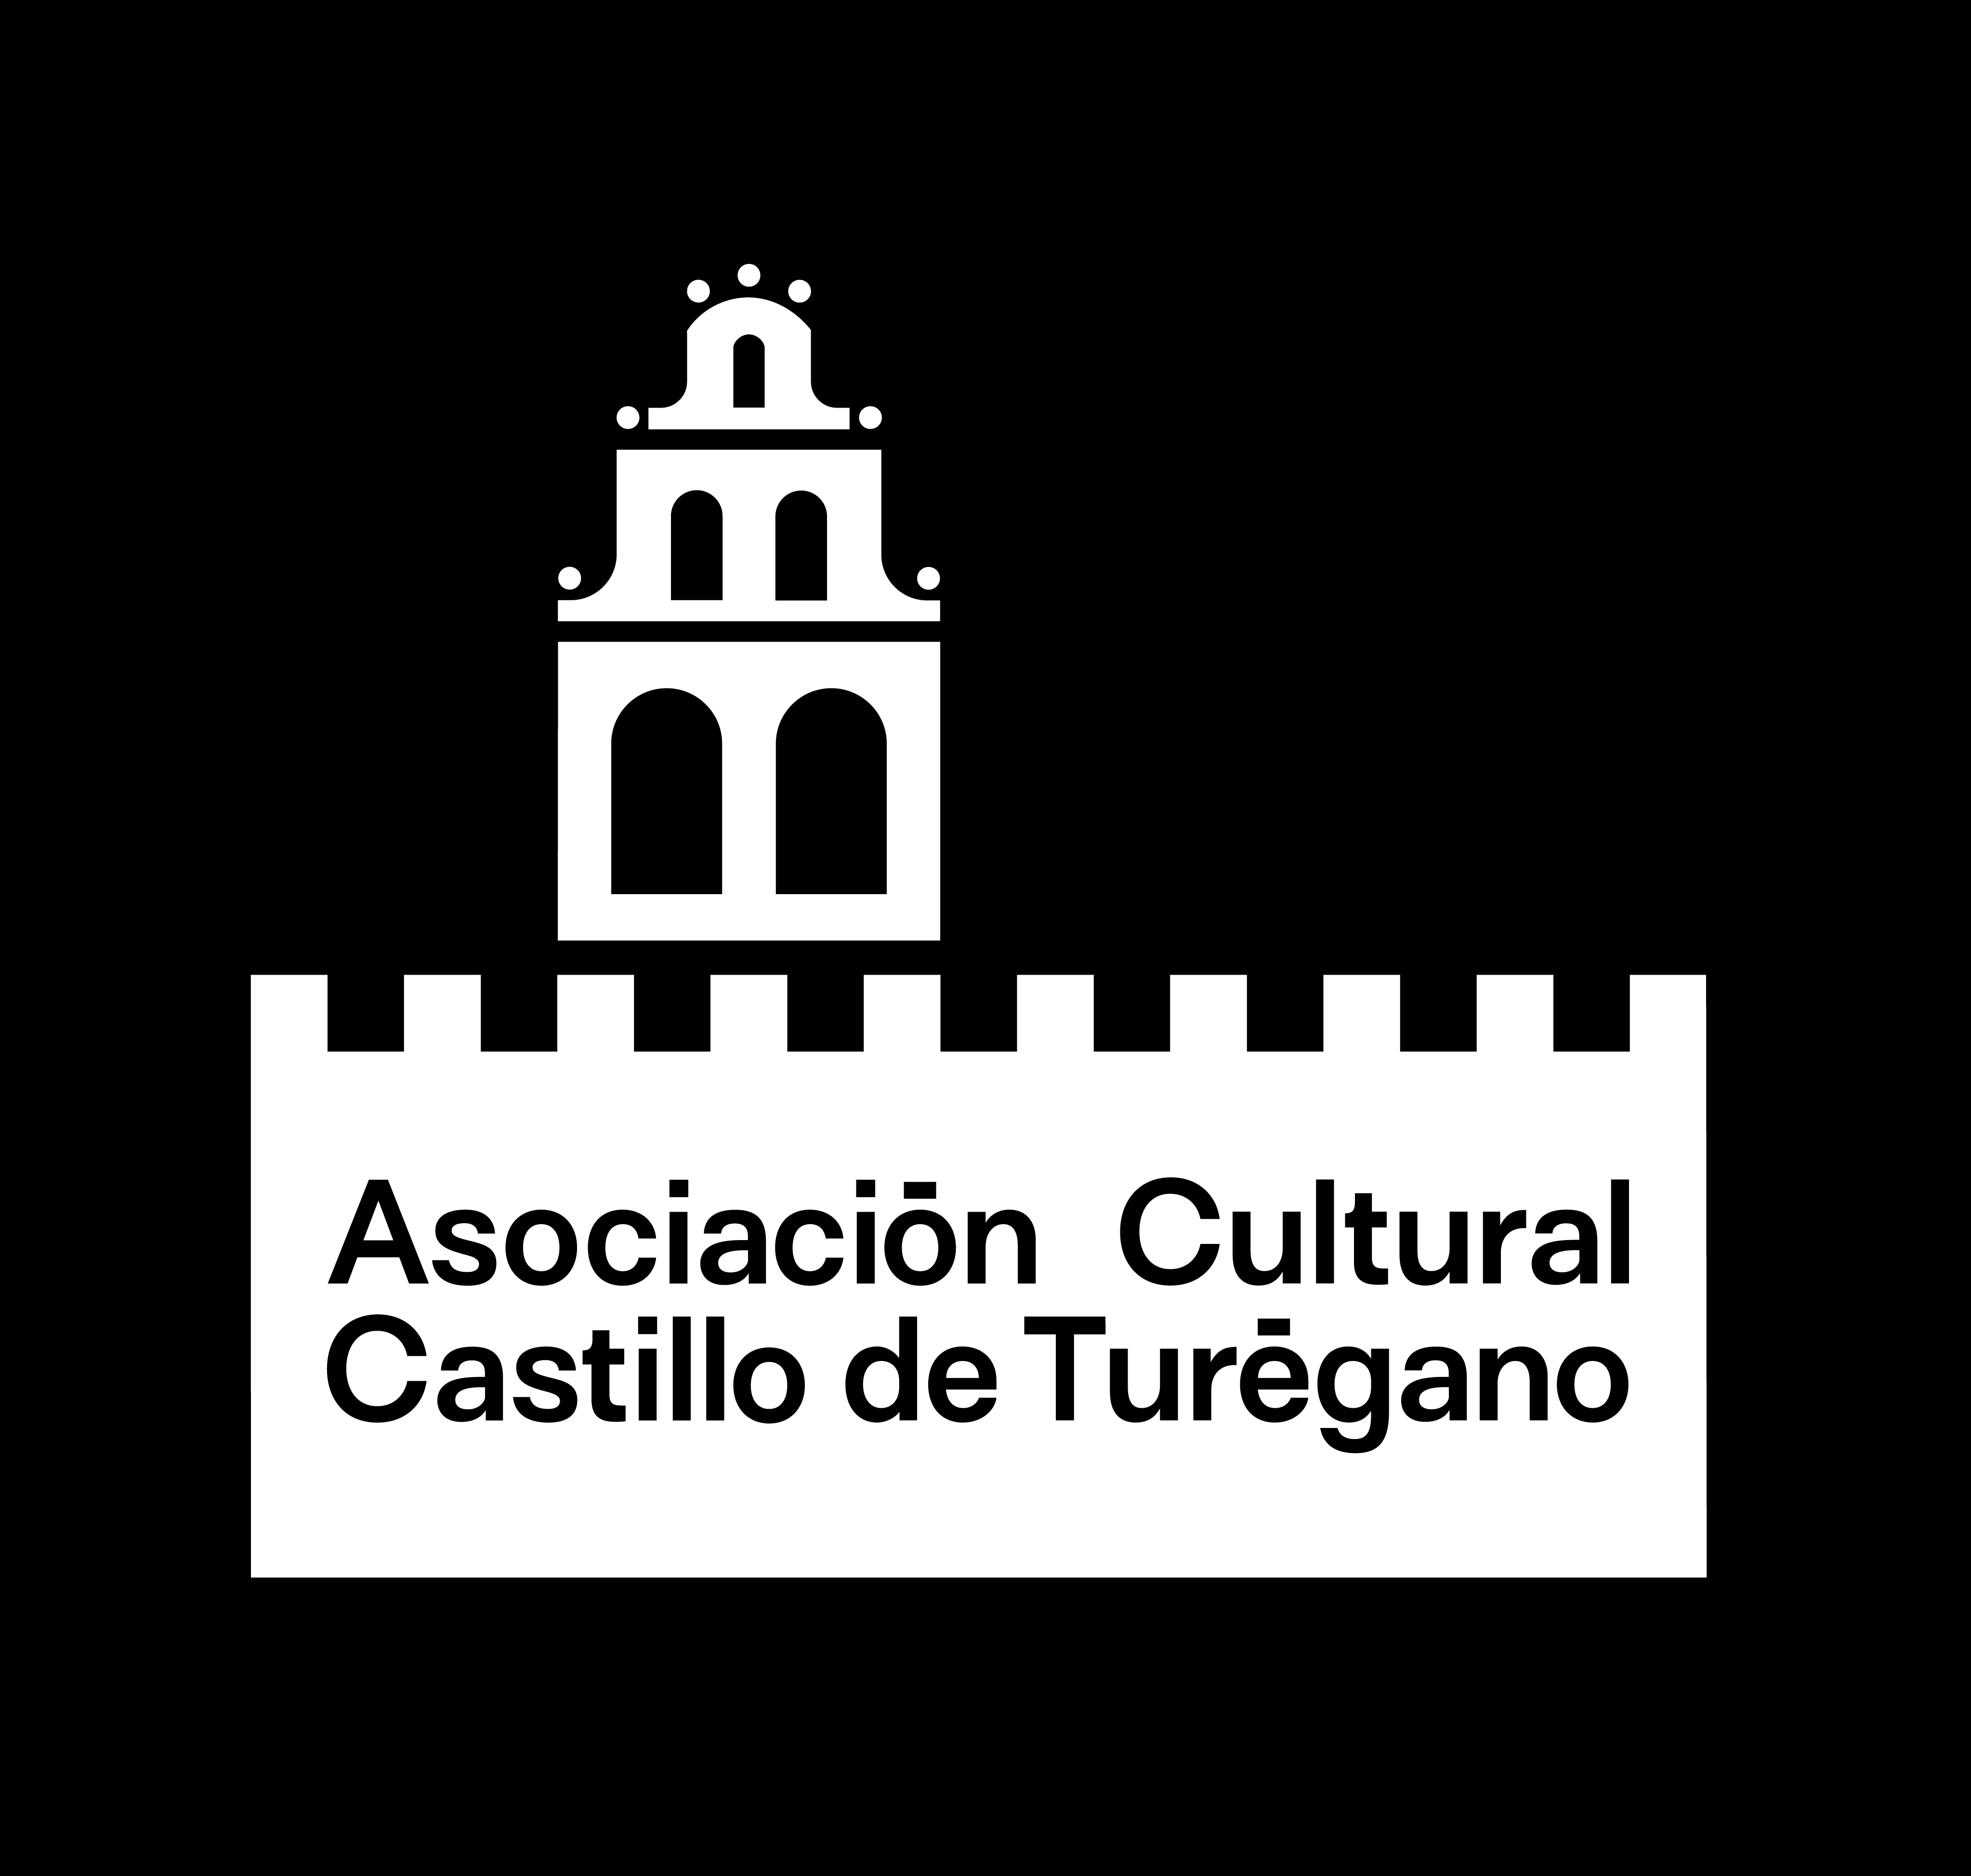        Asociación cultural       Castillo de Turégano